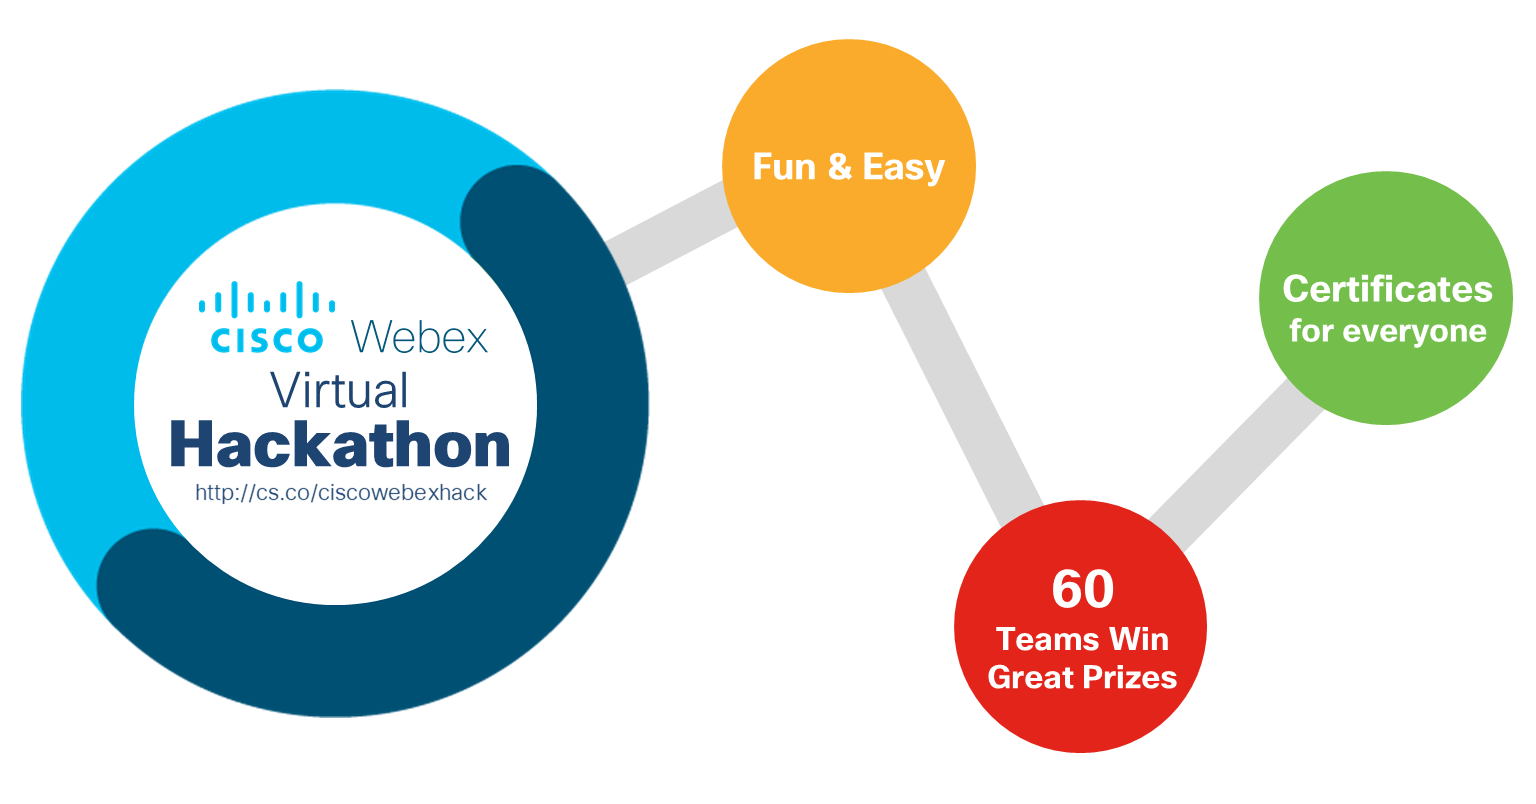 Cisco Webex Virtual Hackathon